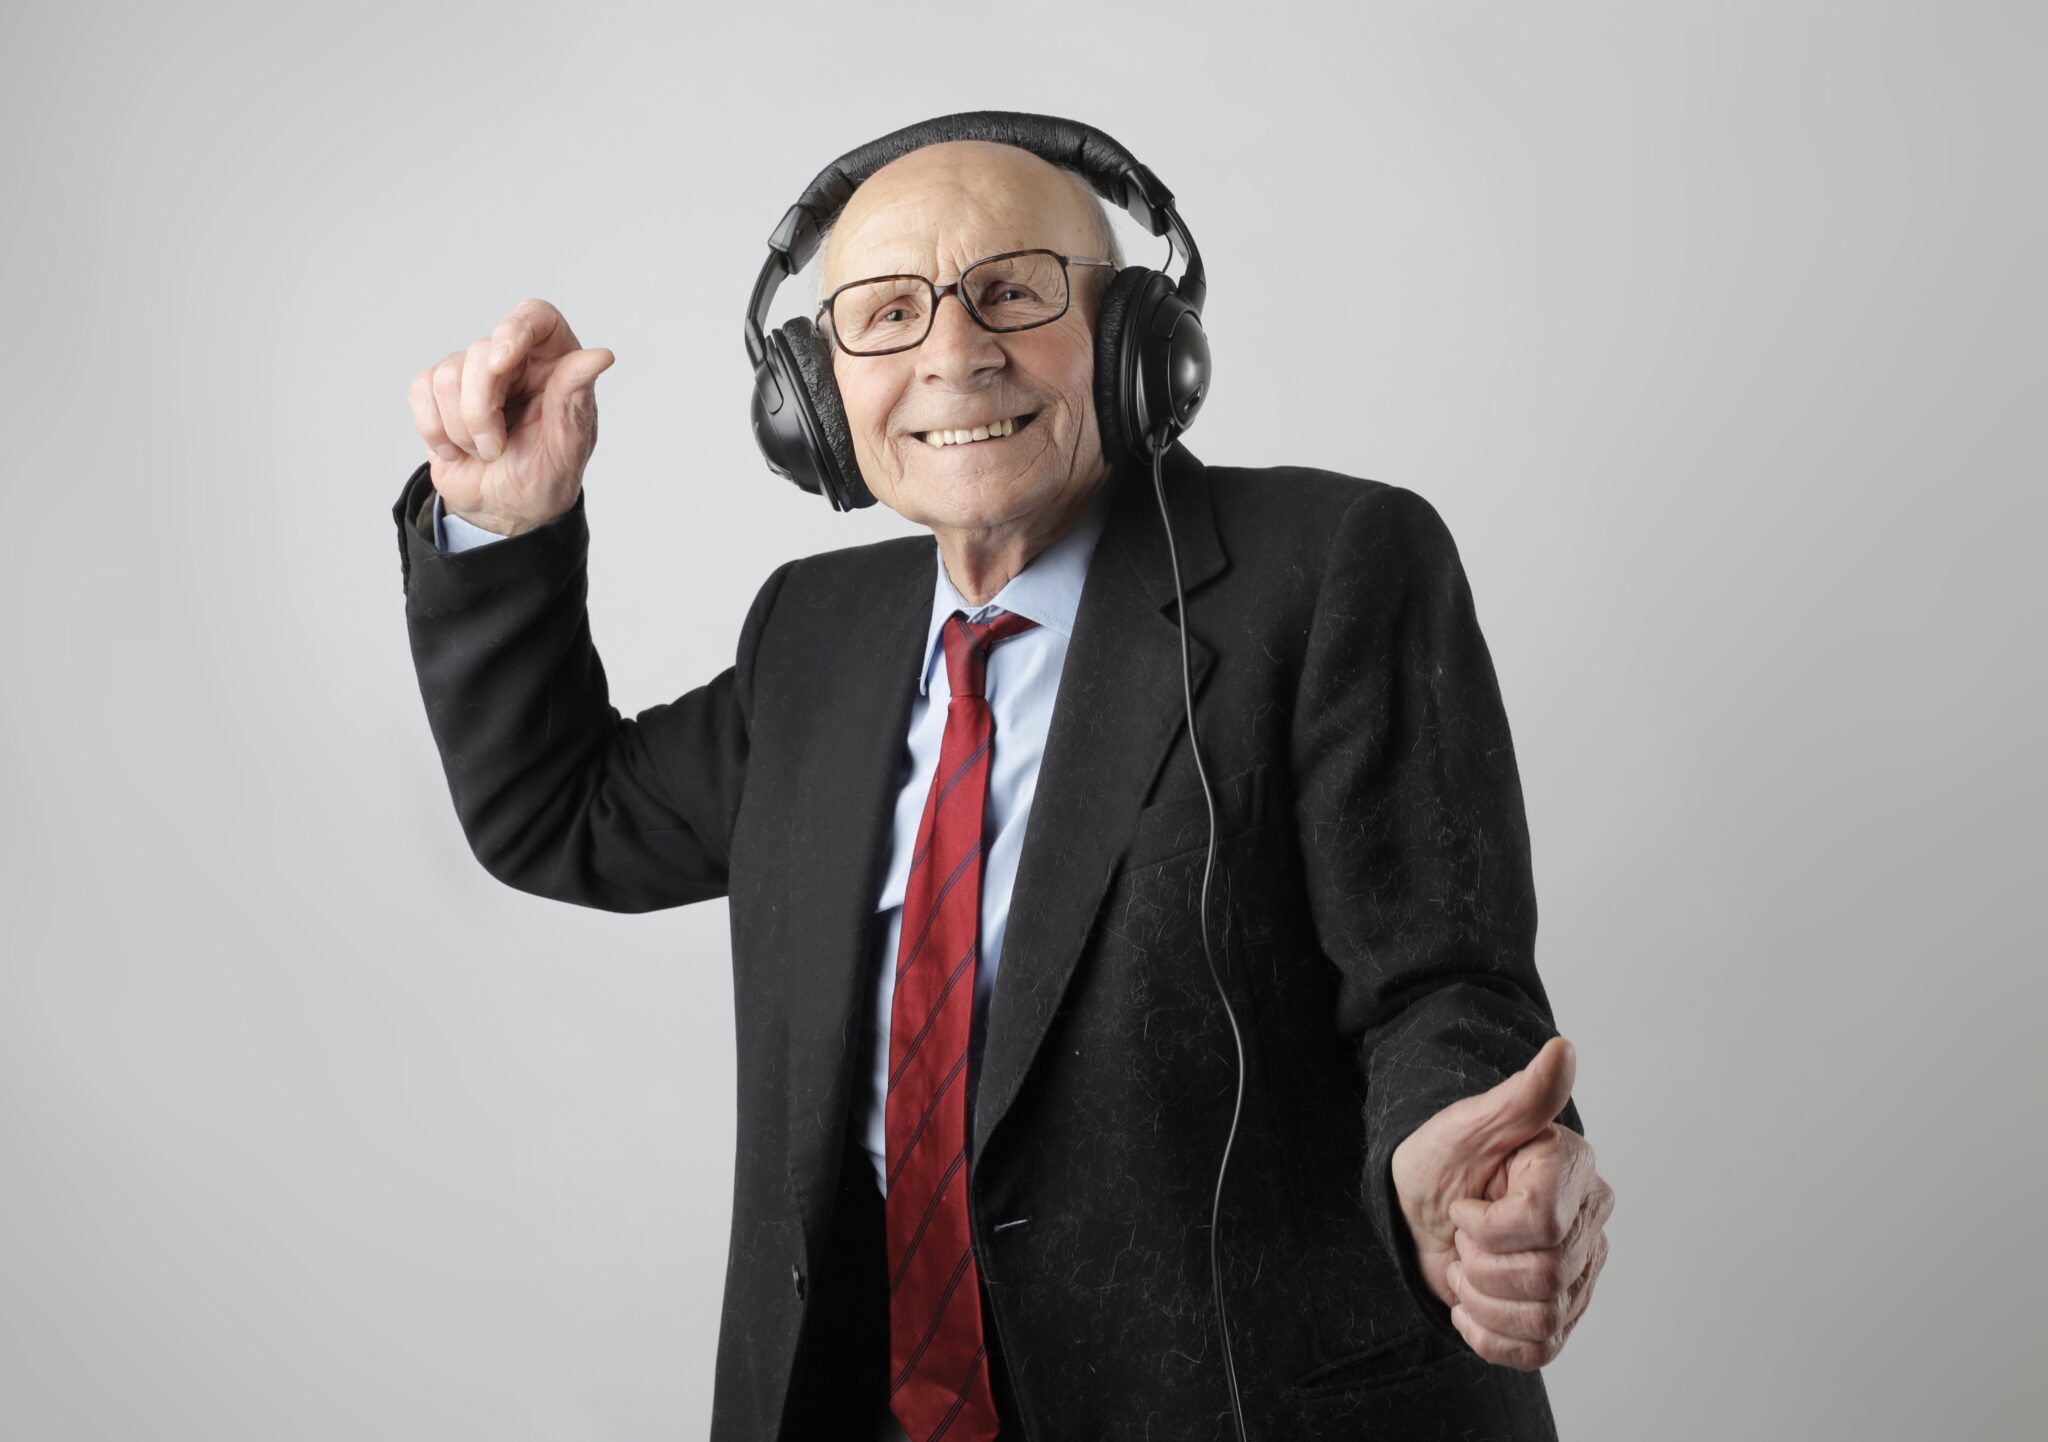 Elder man wearing headphones with coat and tie